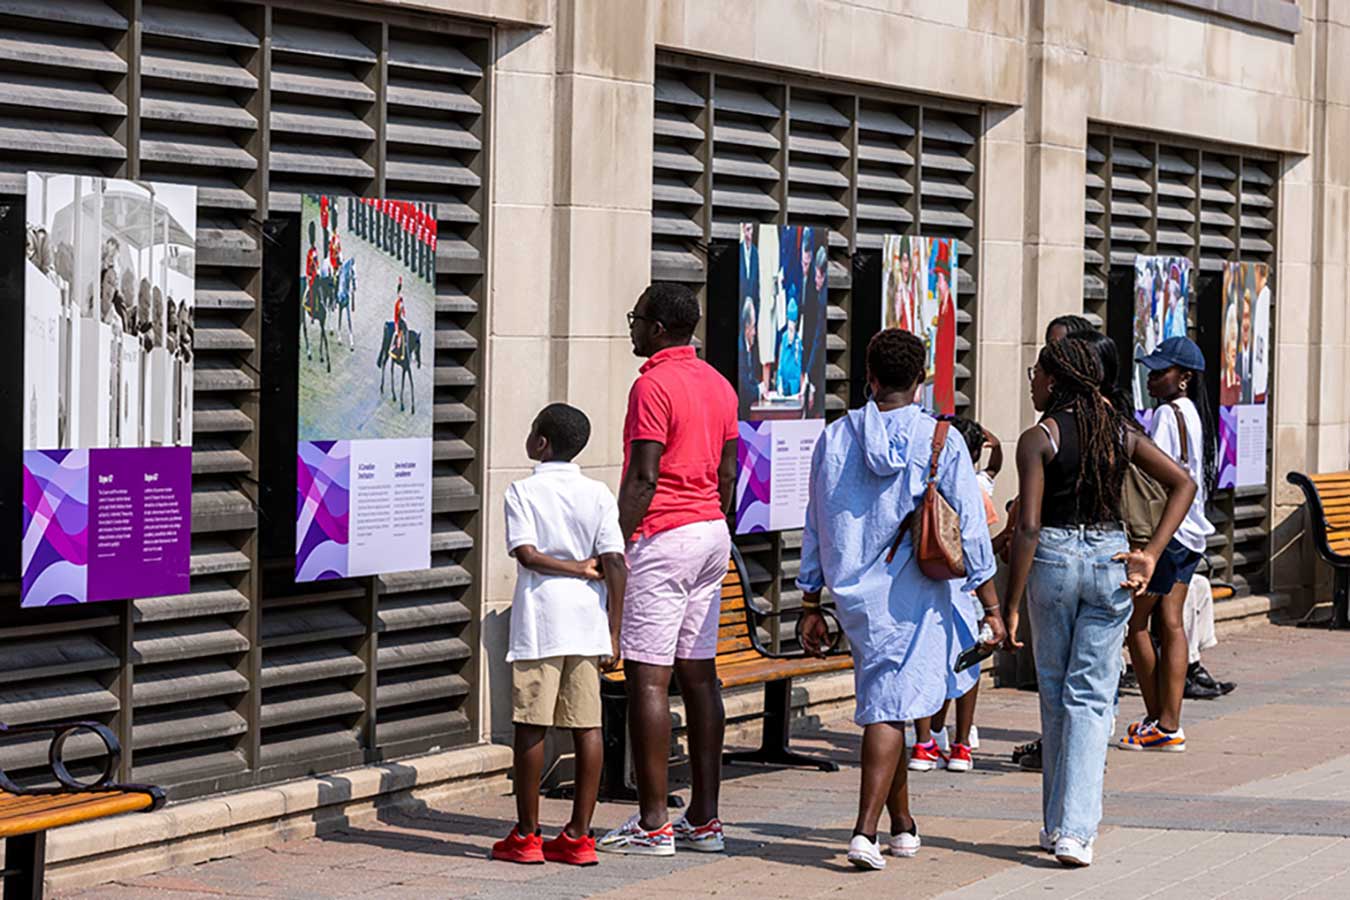 Des gens marchent et s'arrêtent en regardant une exposition extérieure composée de panneaux avec des photos et des textes.